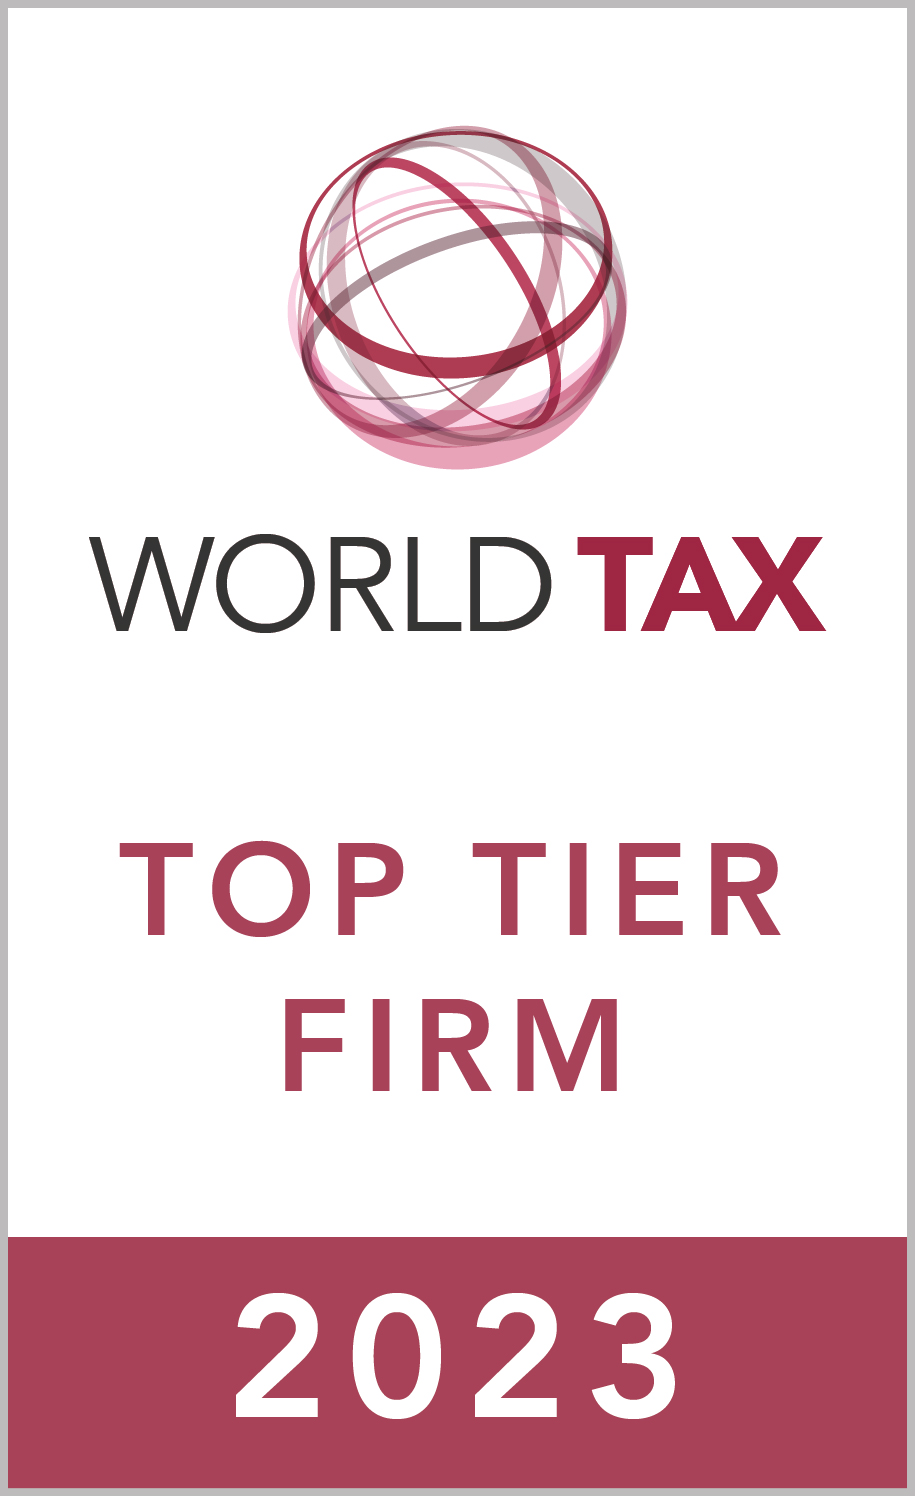 World Tax Top Tier Firm 2023